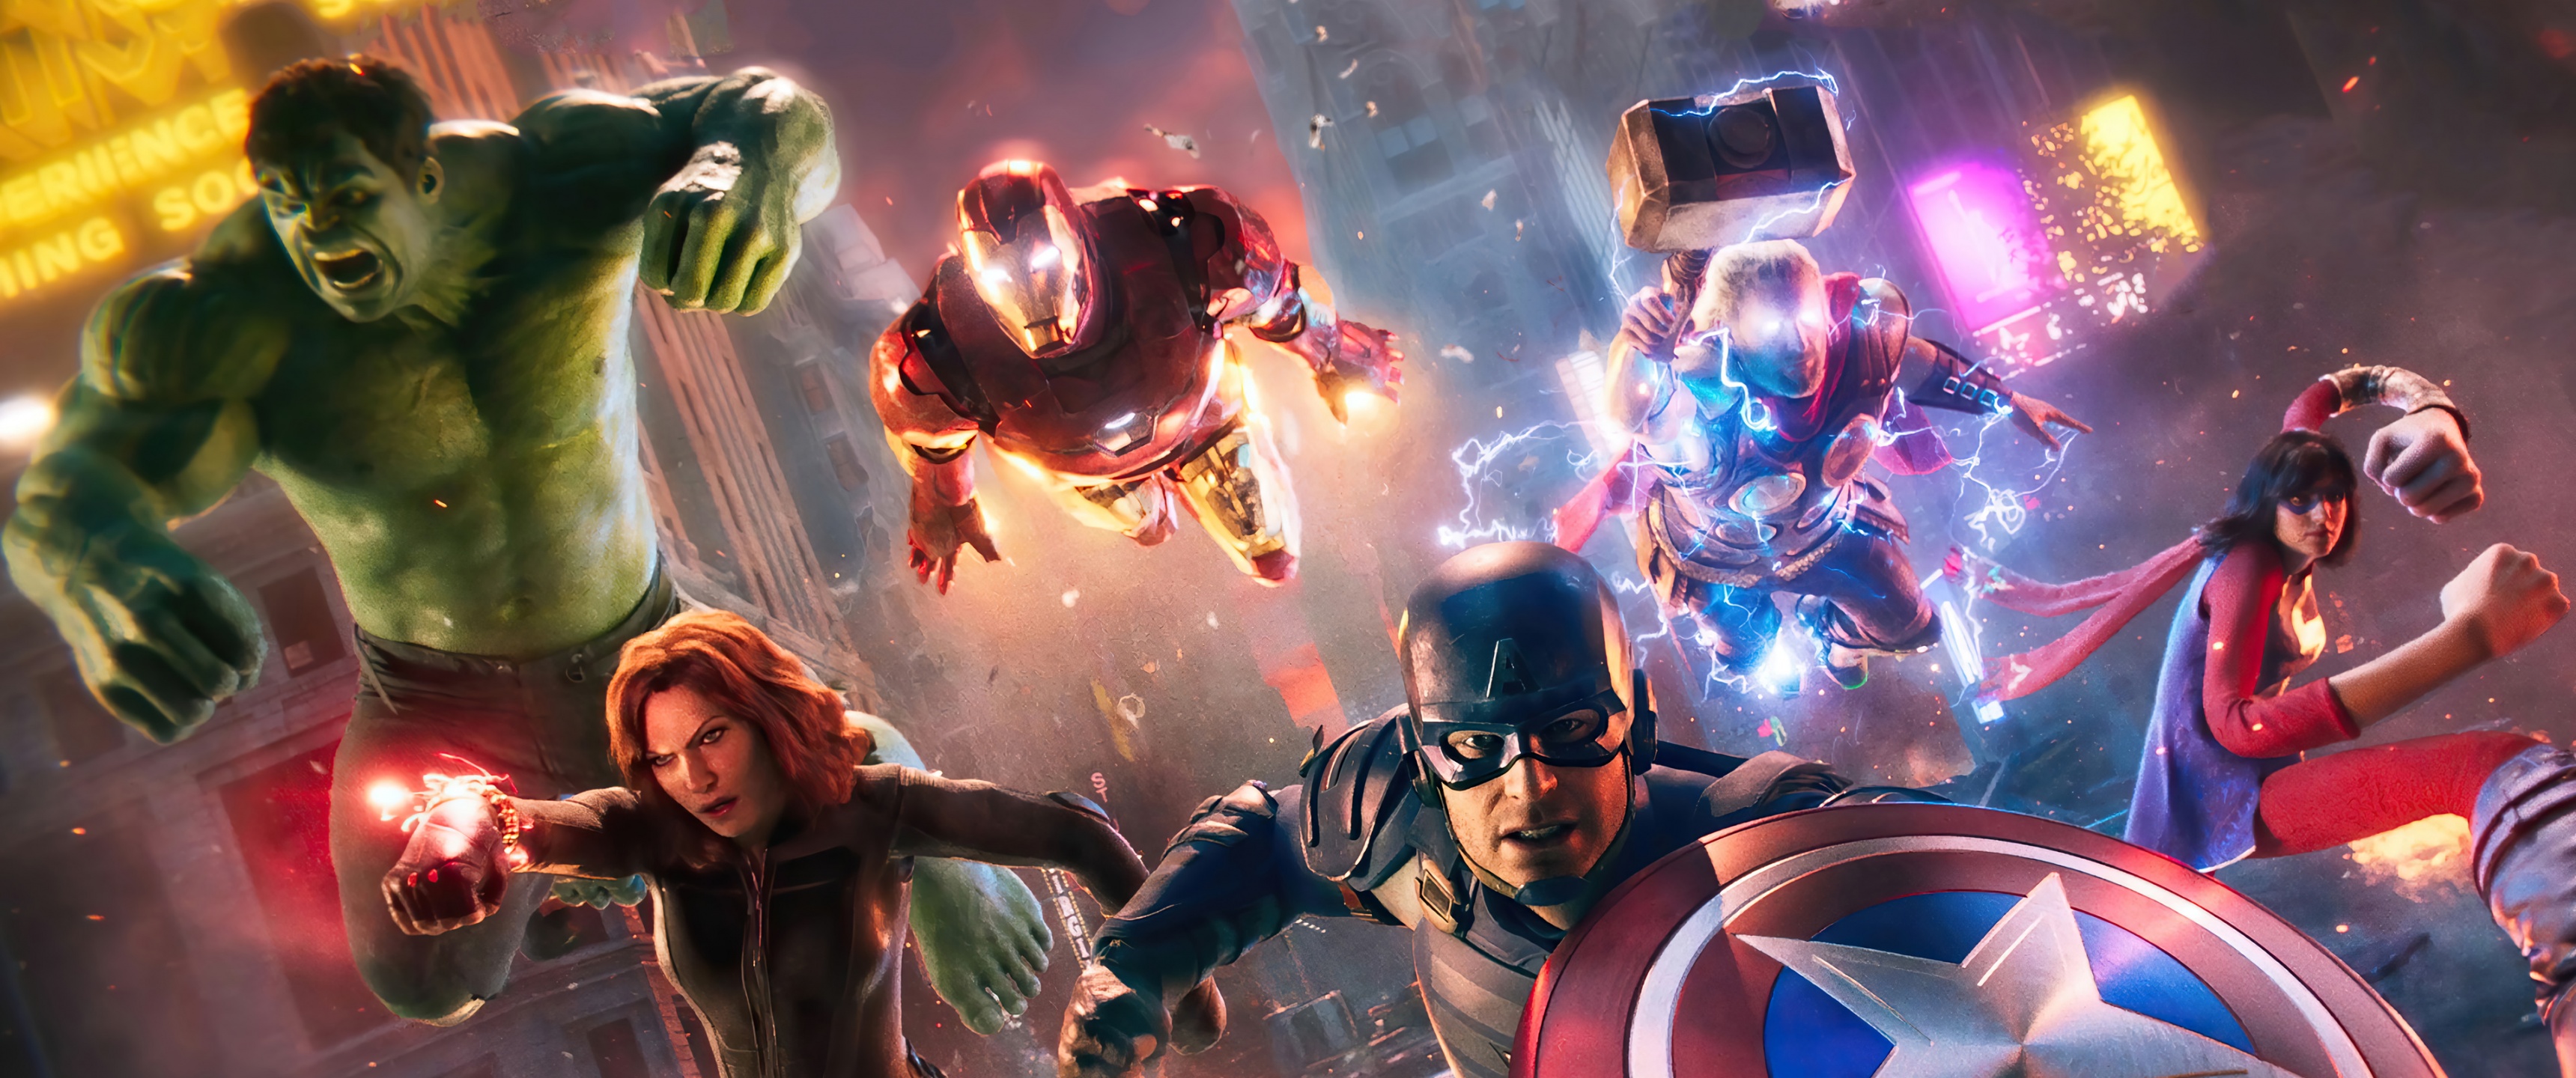 Marvel's Avengers Wallpaper 4K, Marvel Superheroes, Games, #4969